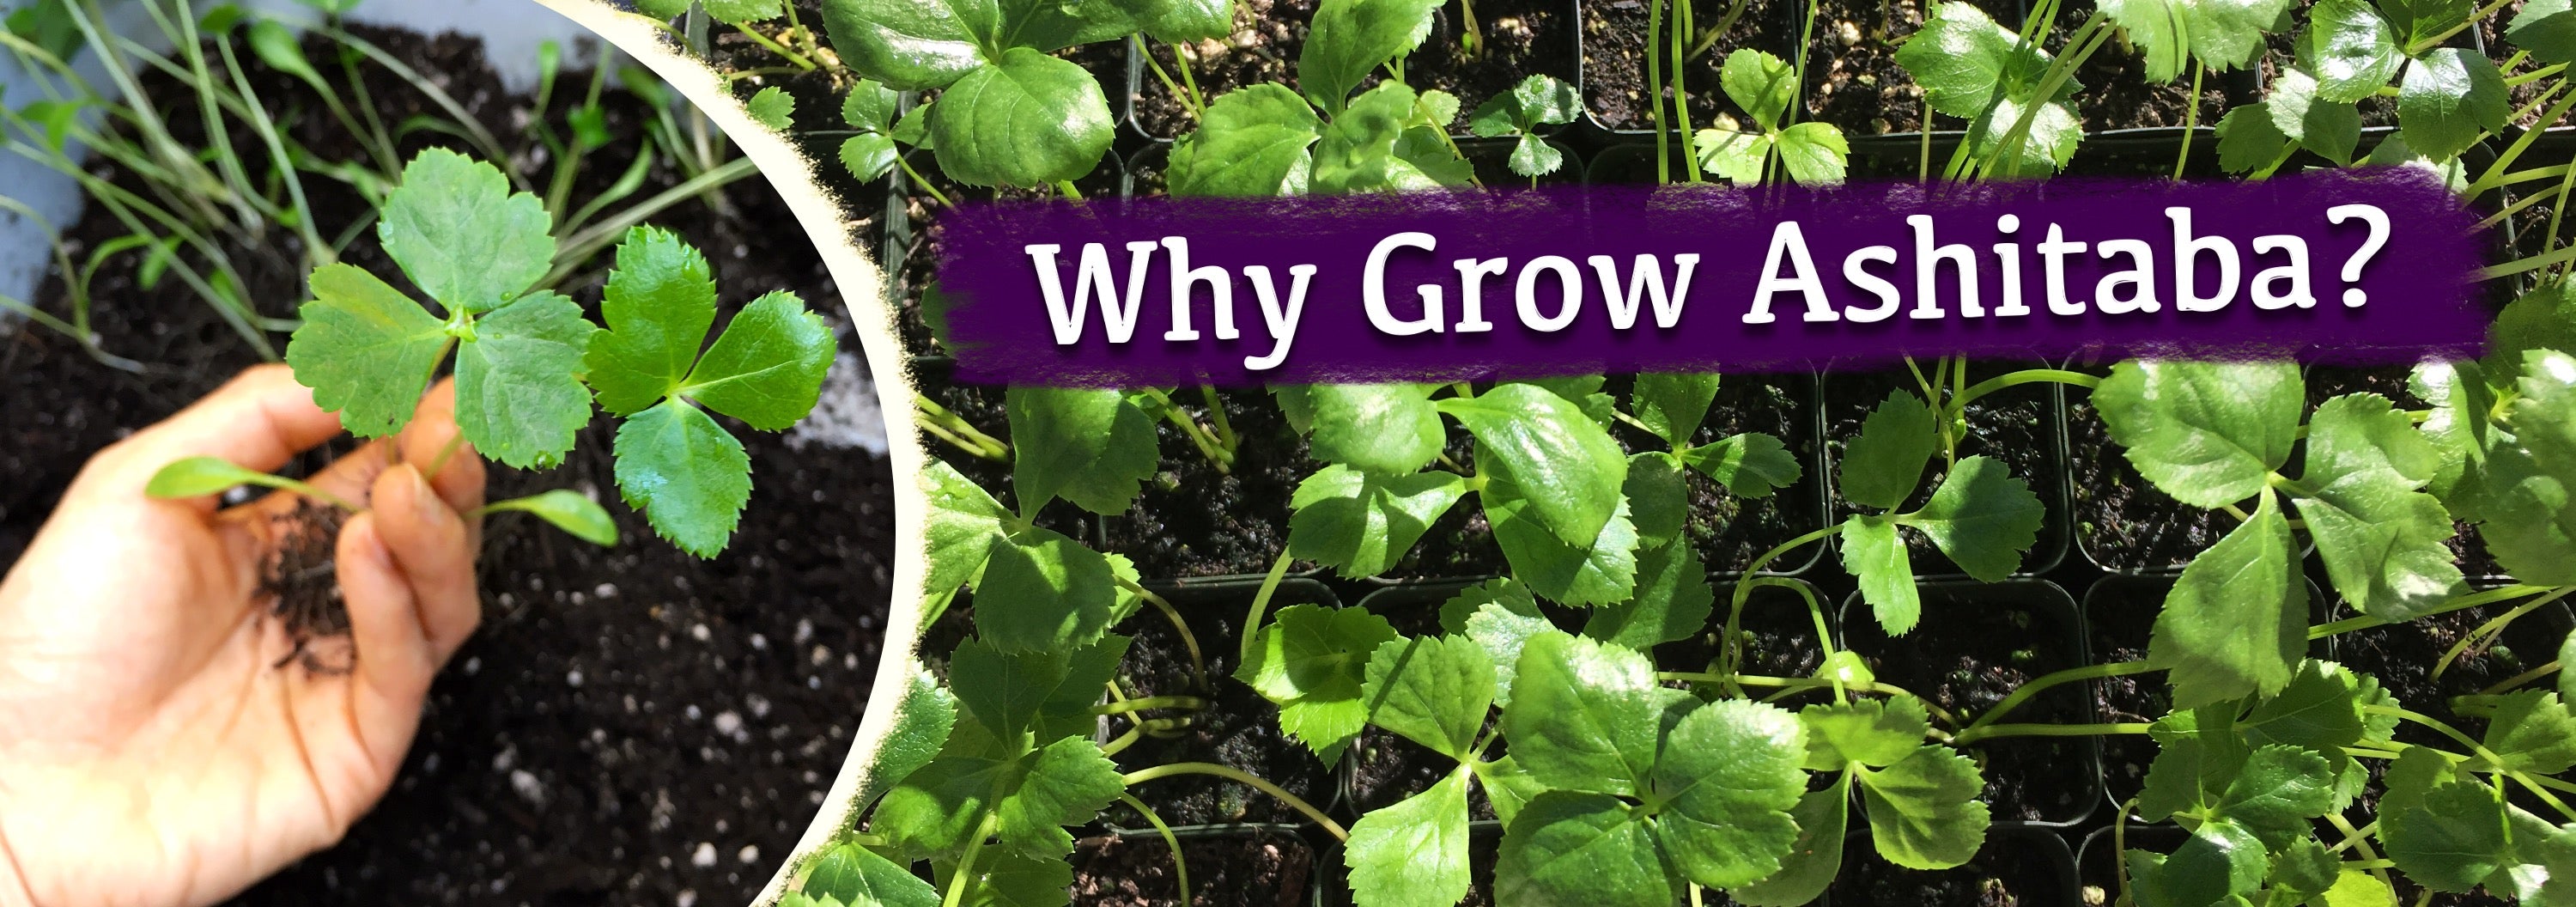 Why Grow Ashitaba